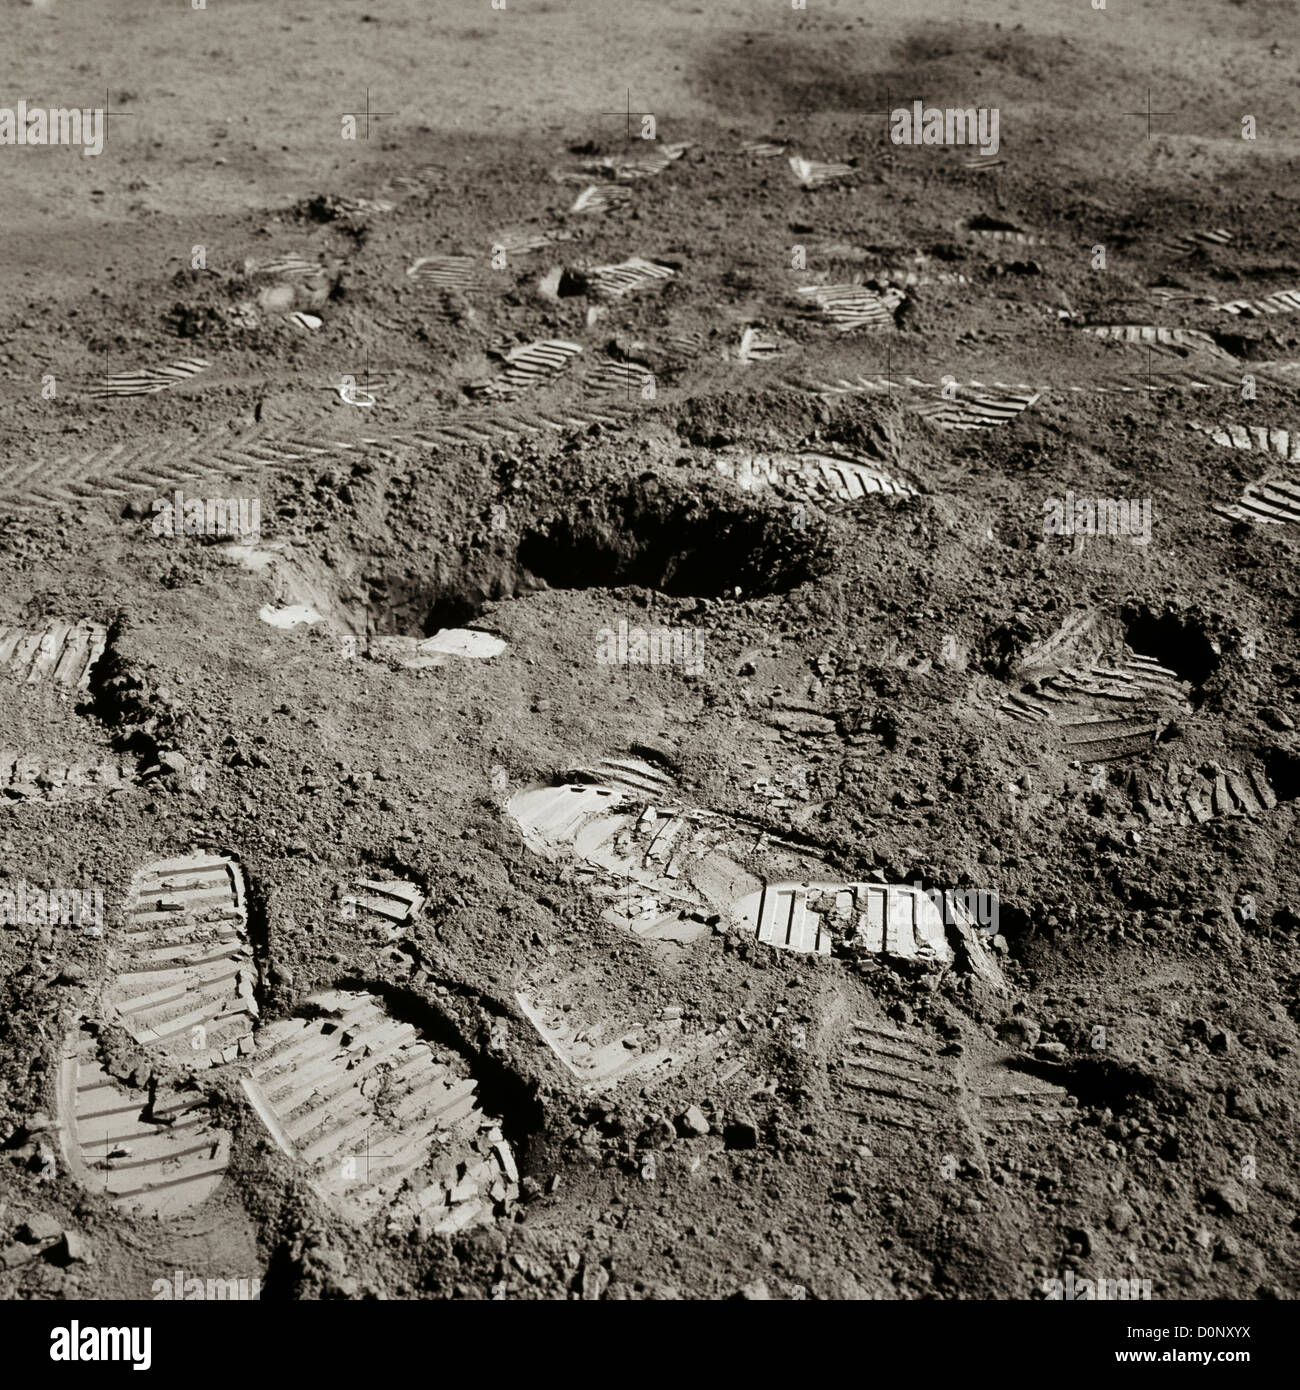 Apollo 15 Footprints on the Moon Stock Photo